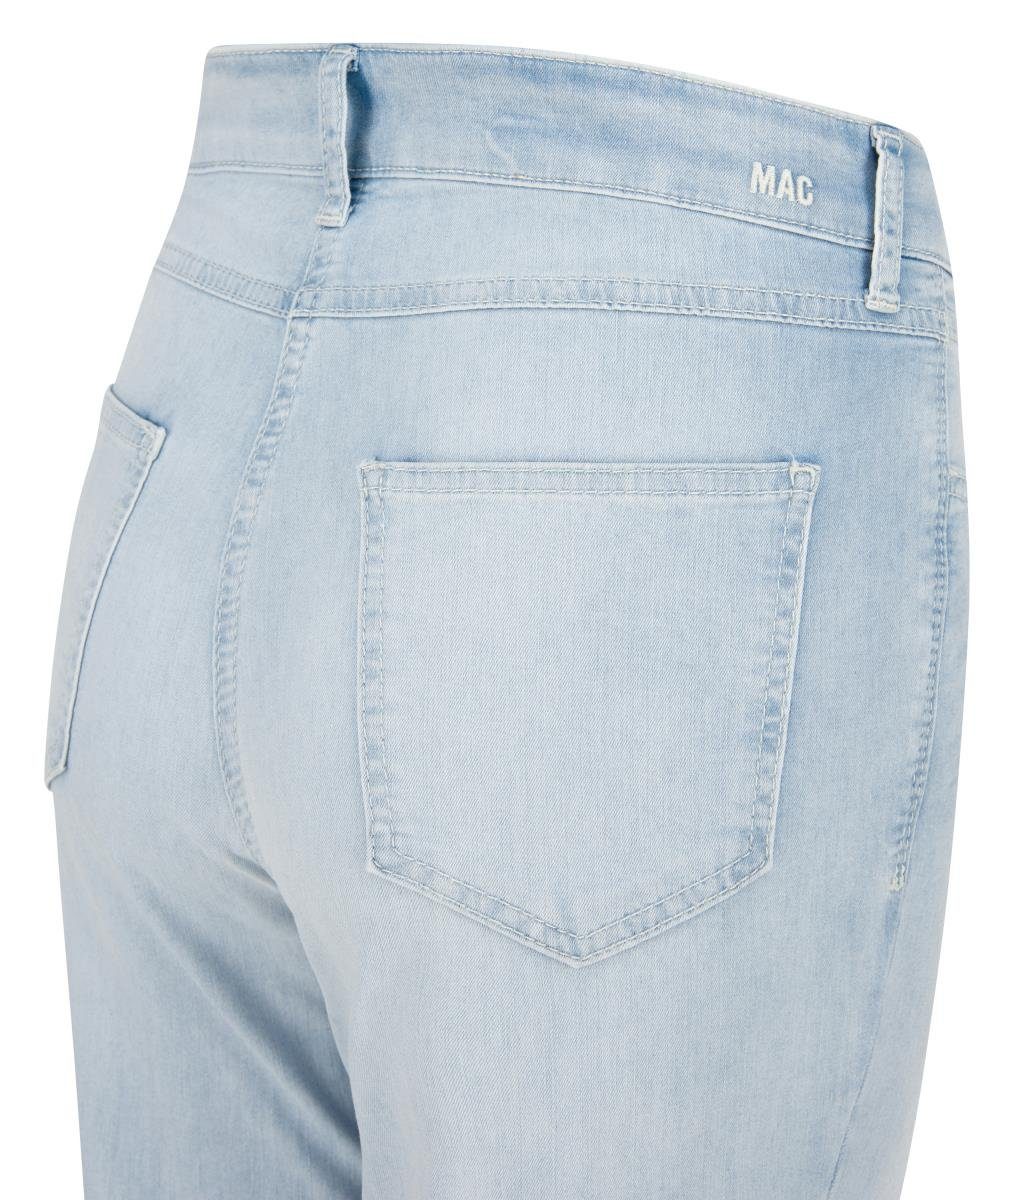 MELANIE MAC MAC Stretch-Jeans D130 bleached batic 7/8 SUMMER 5045-90-0394